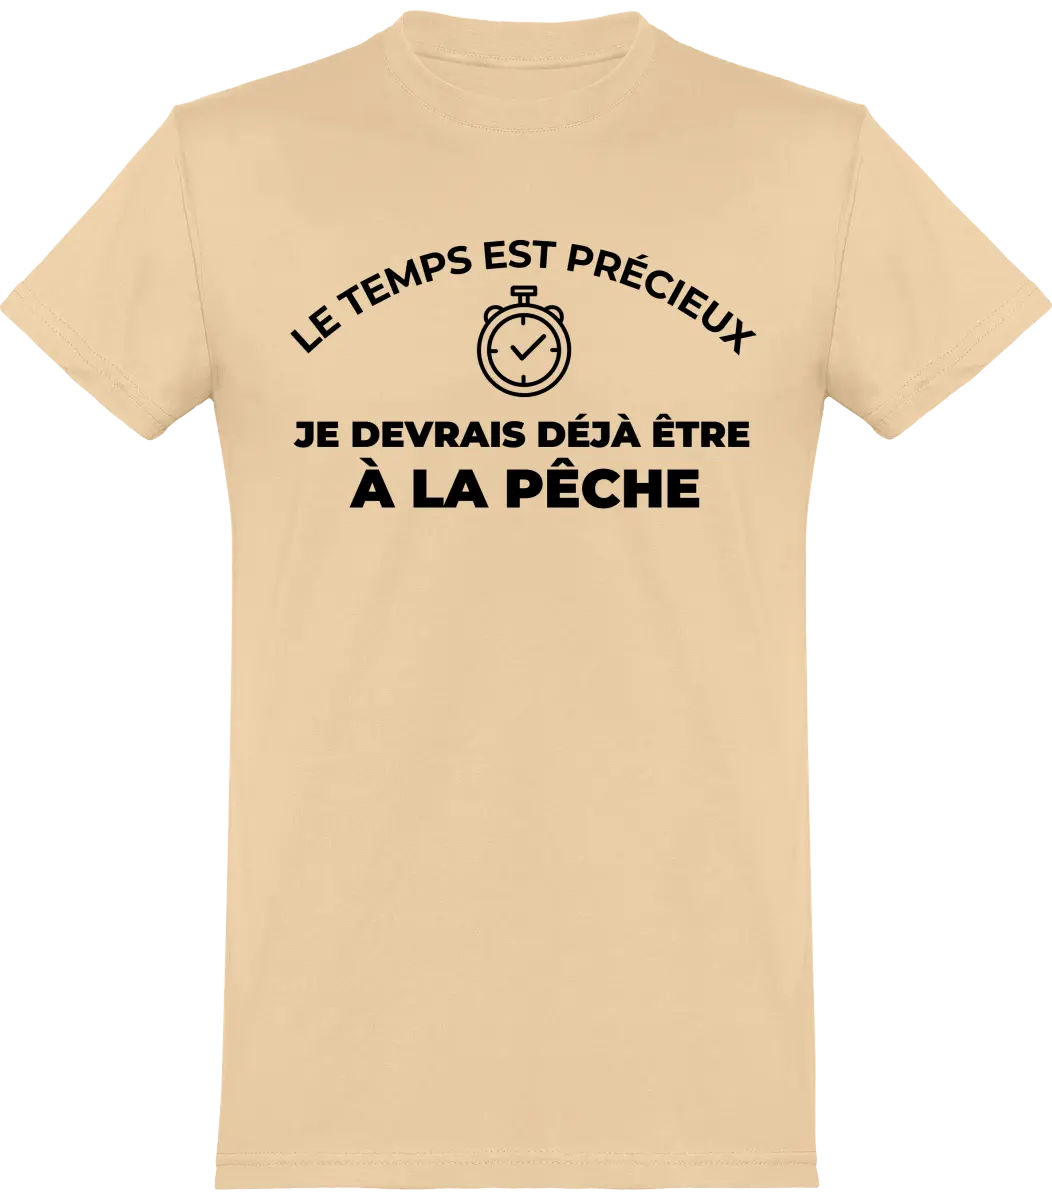 T-shirt pêcheur "Si ça mord pas tu peux toujours bouffer l'appât" | Mixte - French Humour